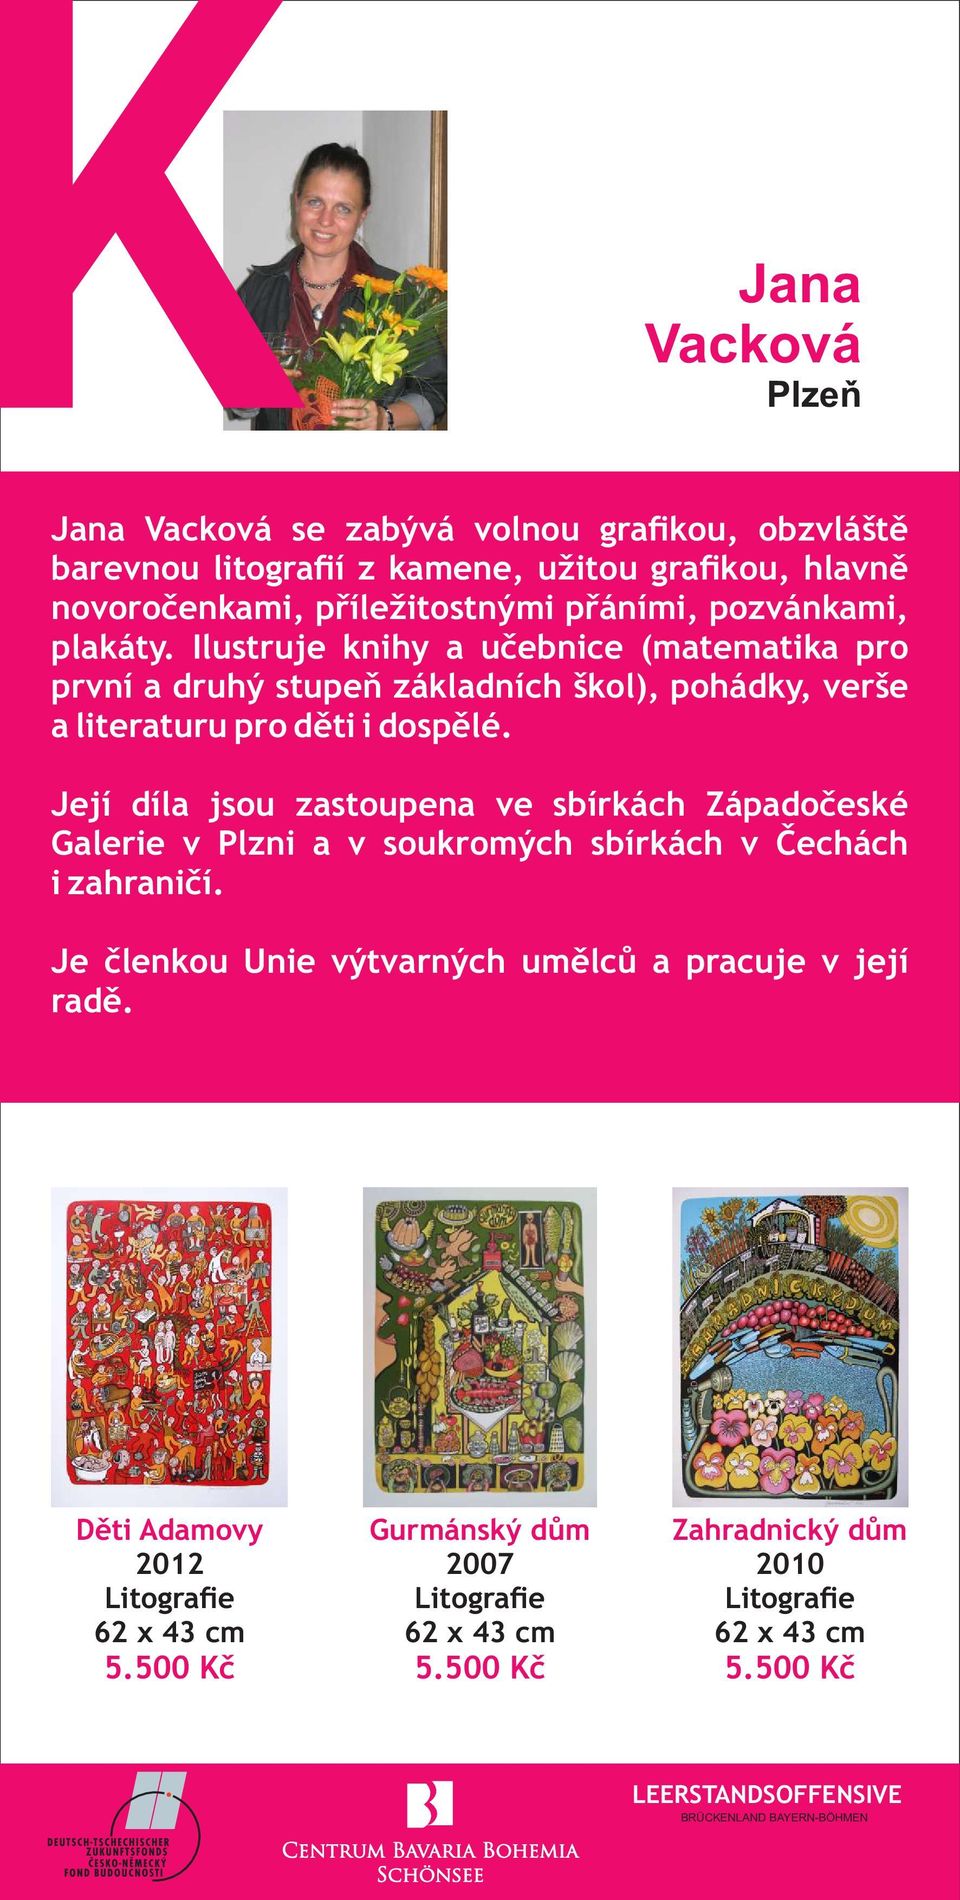 Její díla jsou zastoupena ve sbírkách Západočeské Galerie v Plzni a v soukromých sbírkách v Čechách i zahraničí.